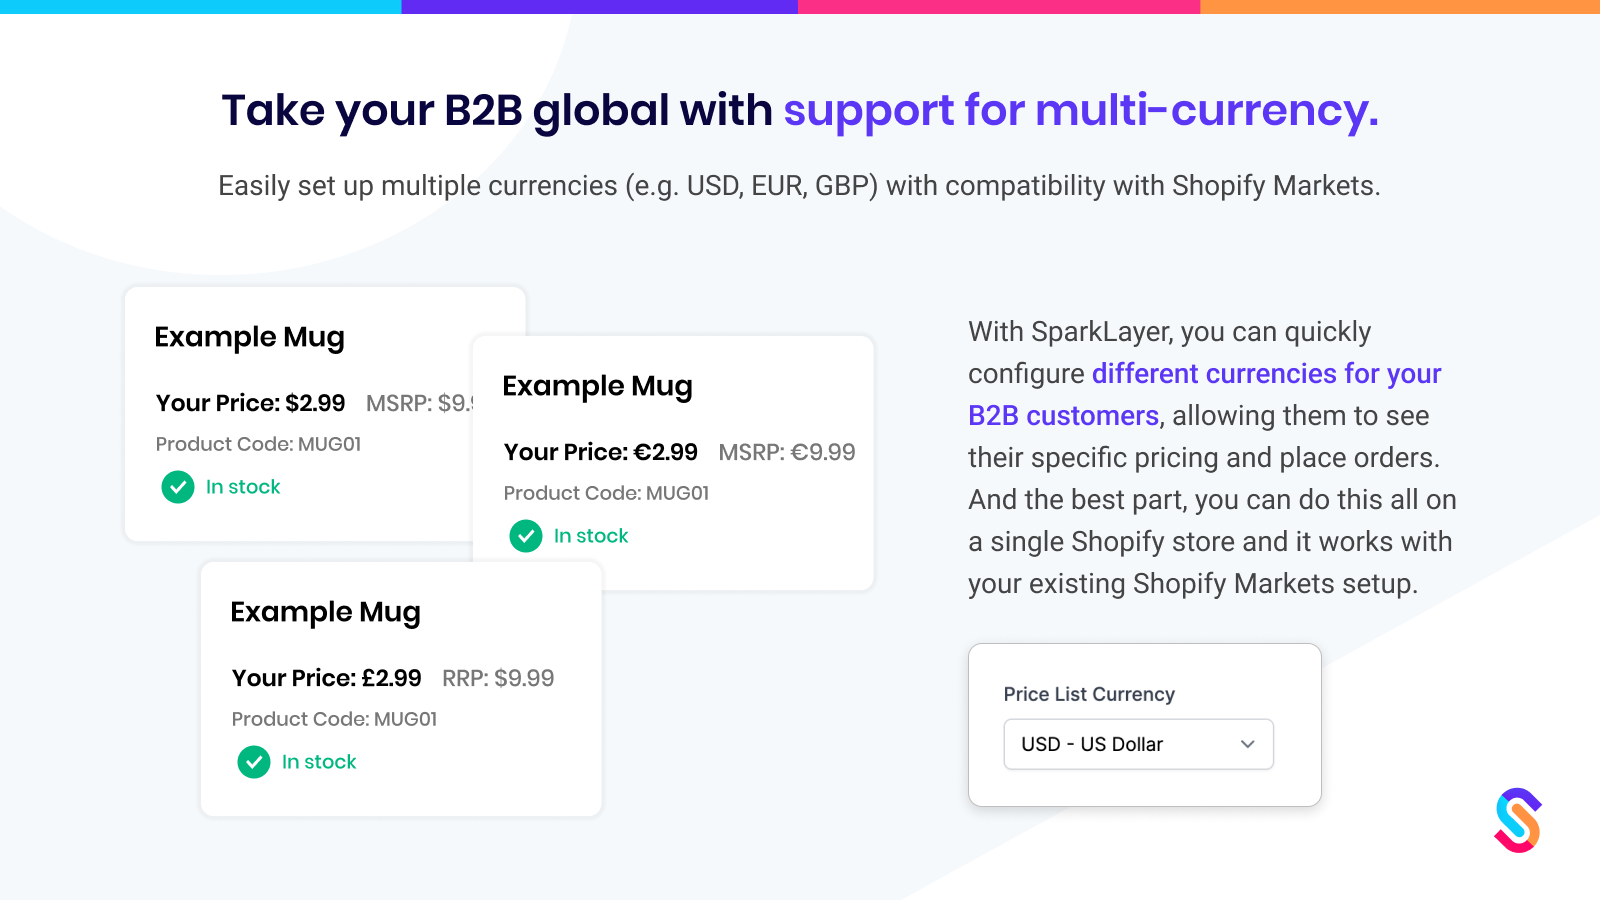 Lleva tu B2B a nivel global con soporte para multi-moneda.